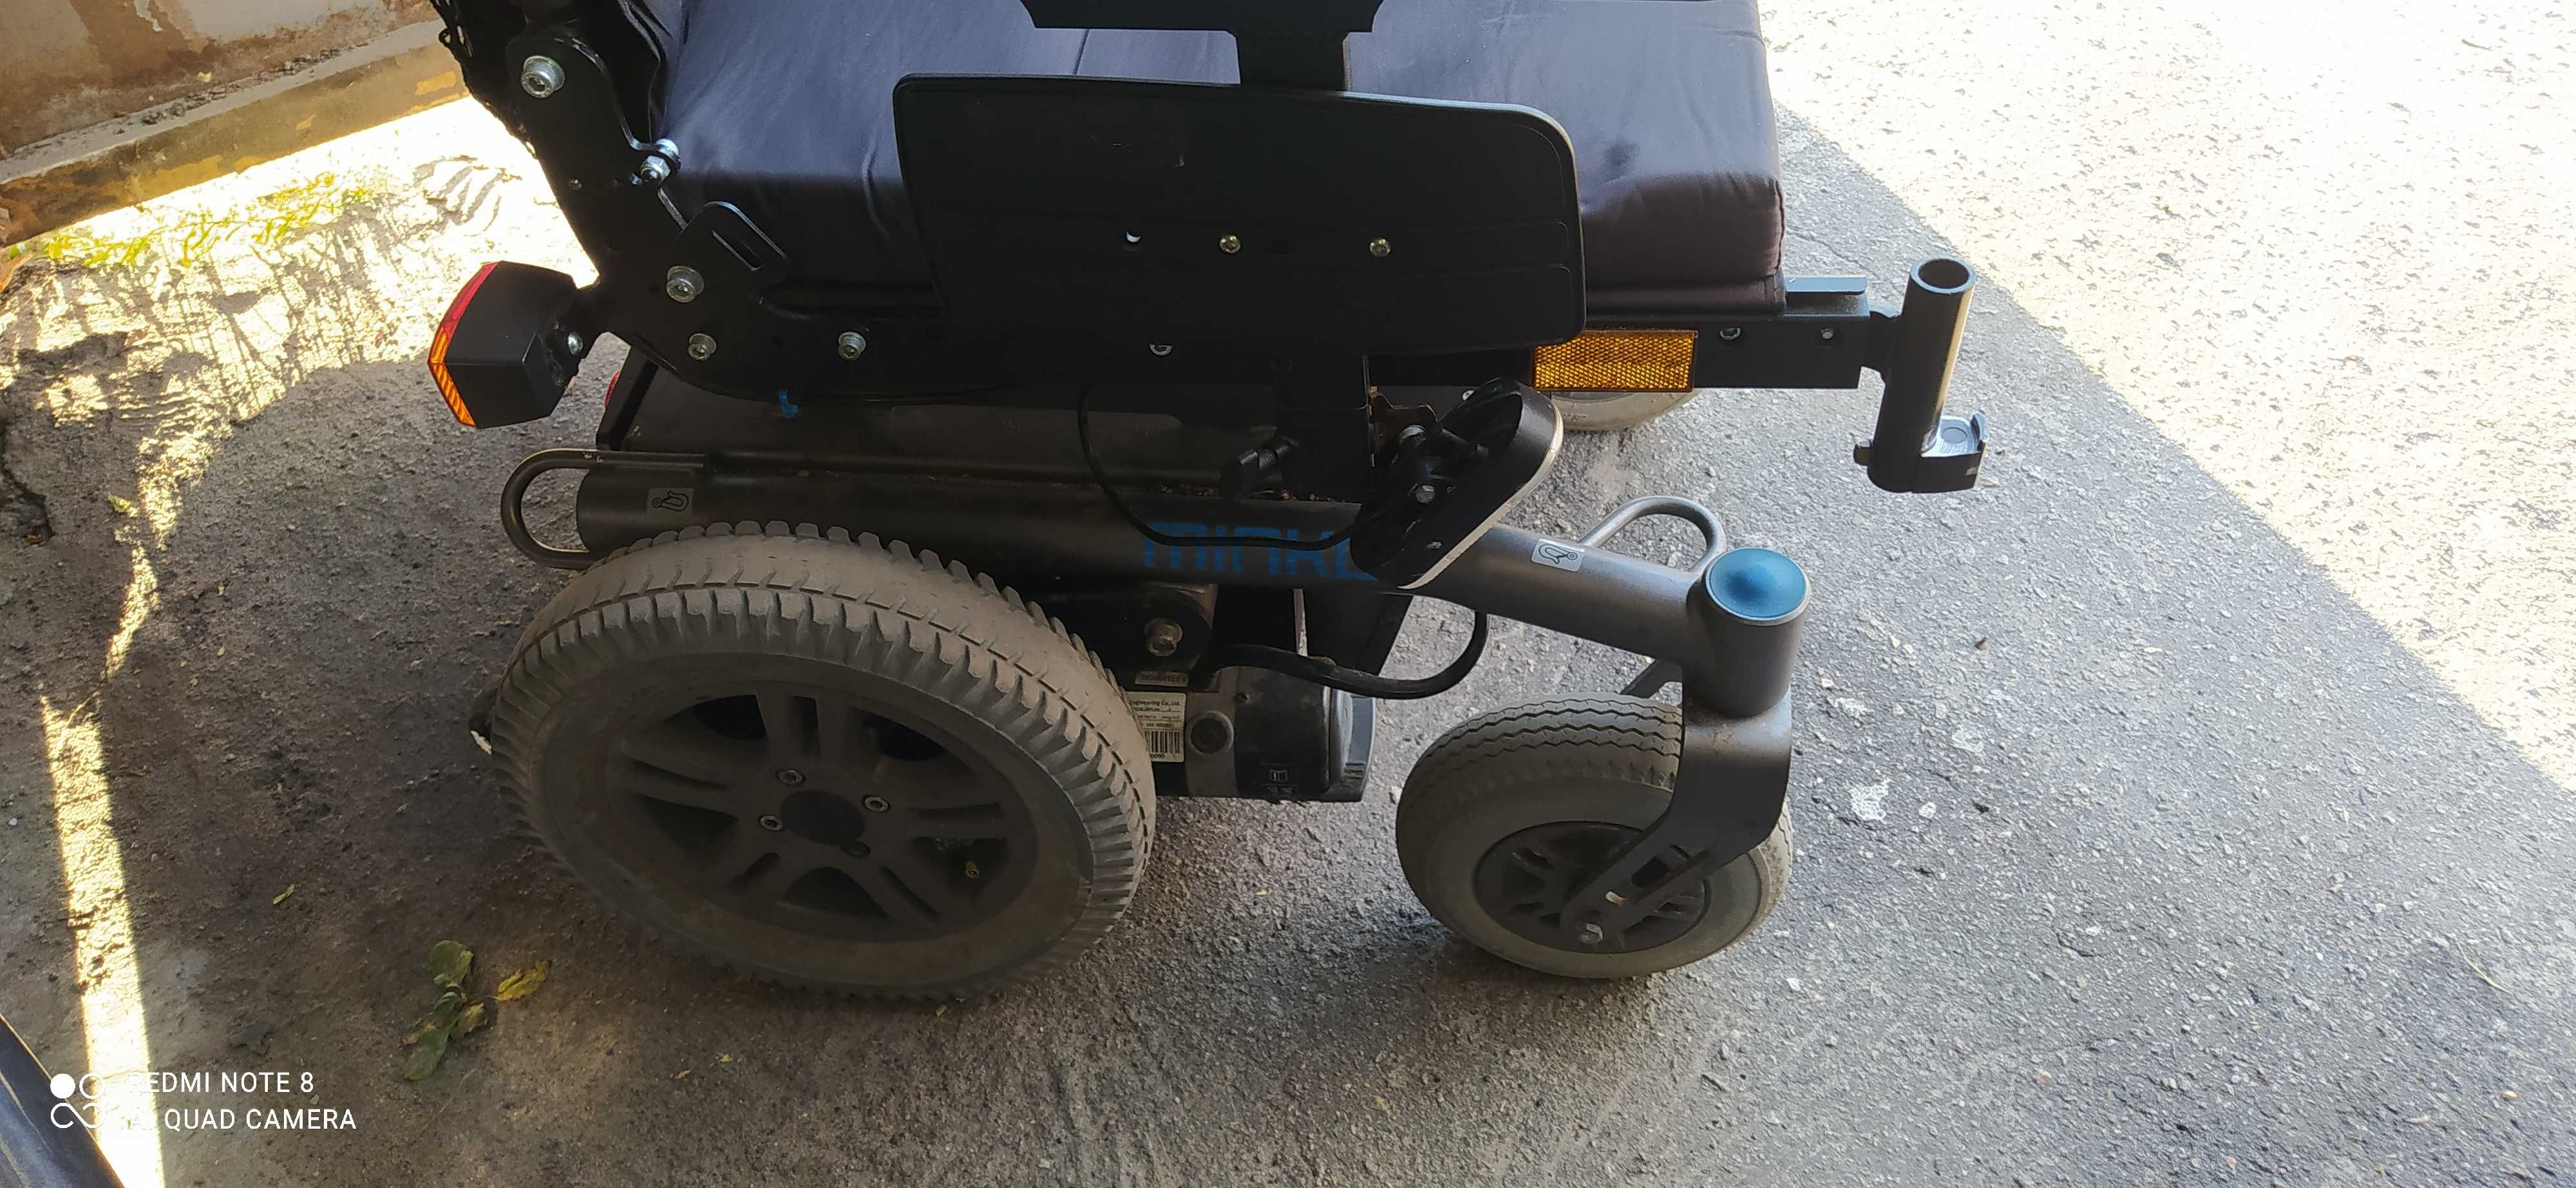 Электрическая инвалидная коляска DIETZ